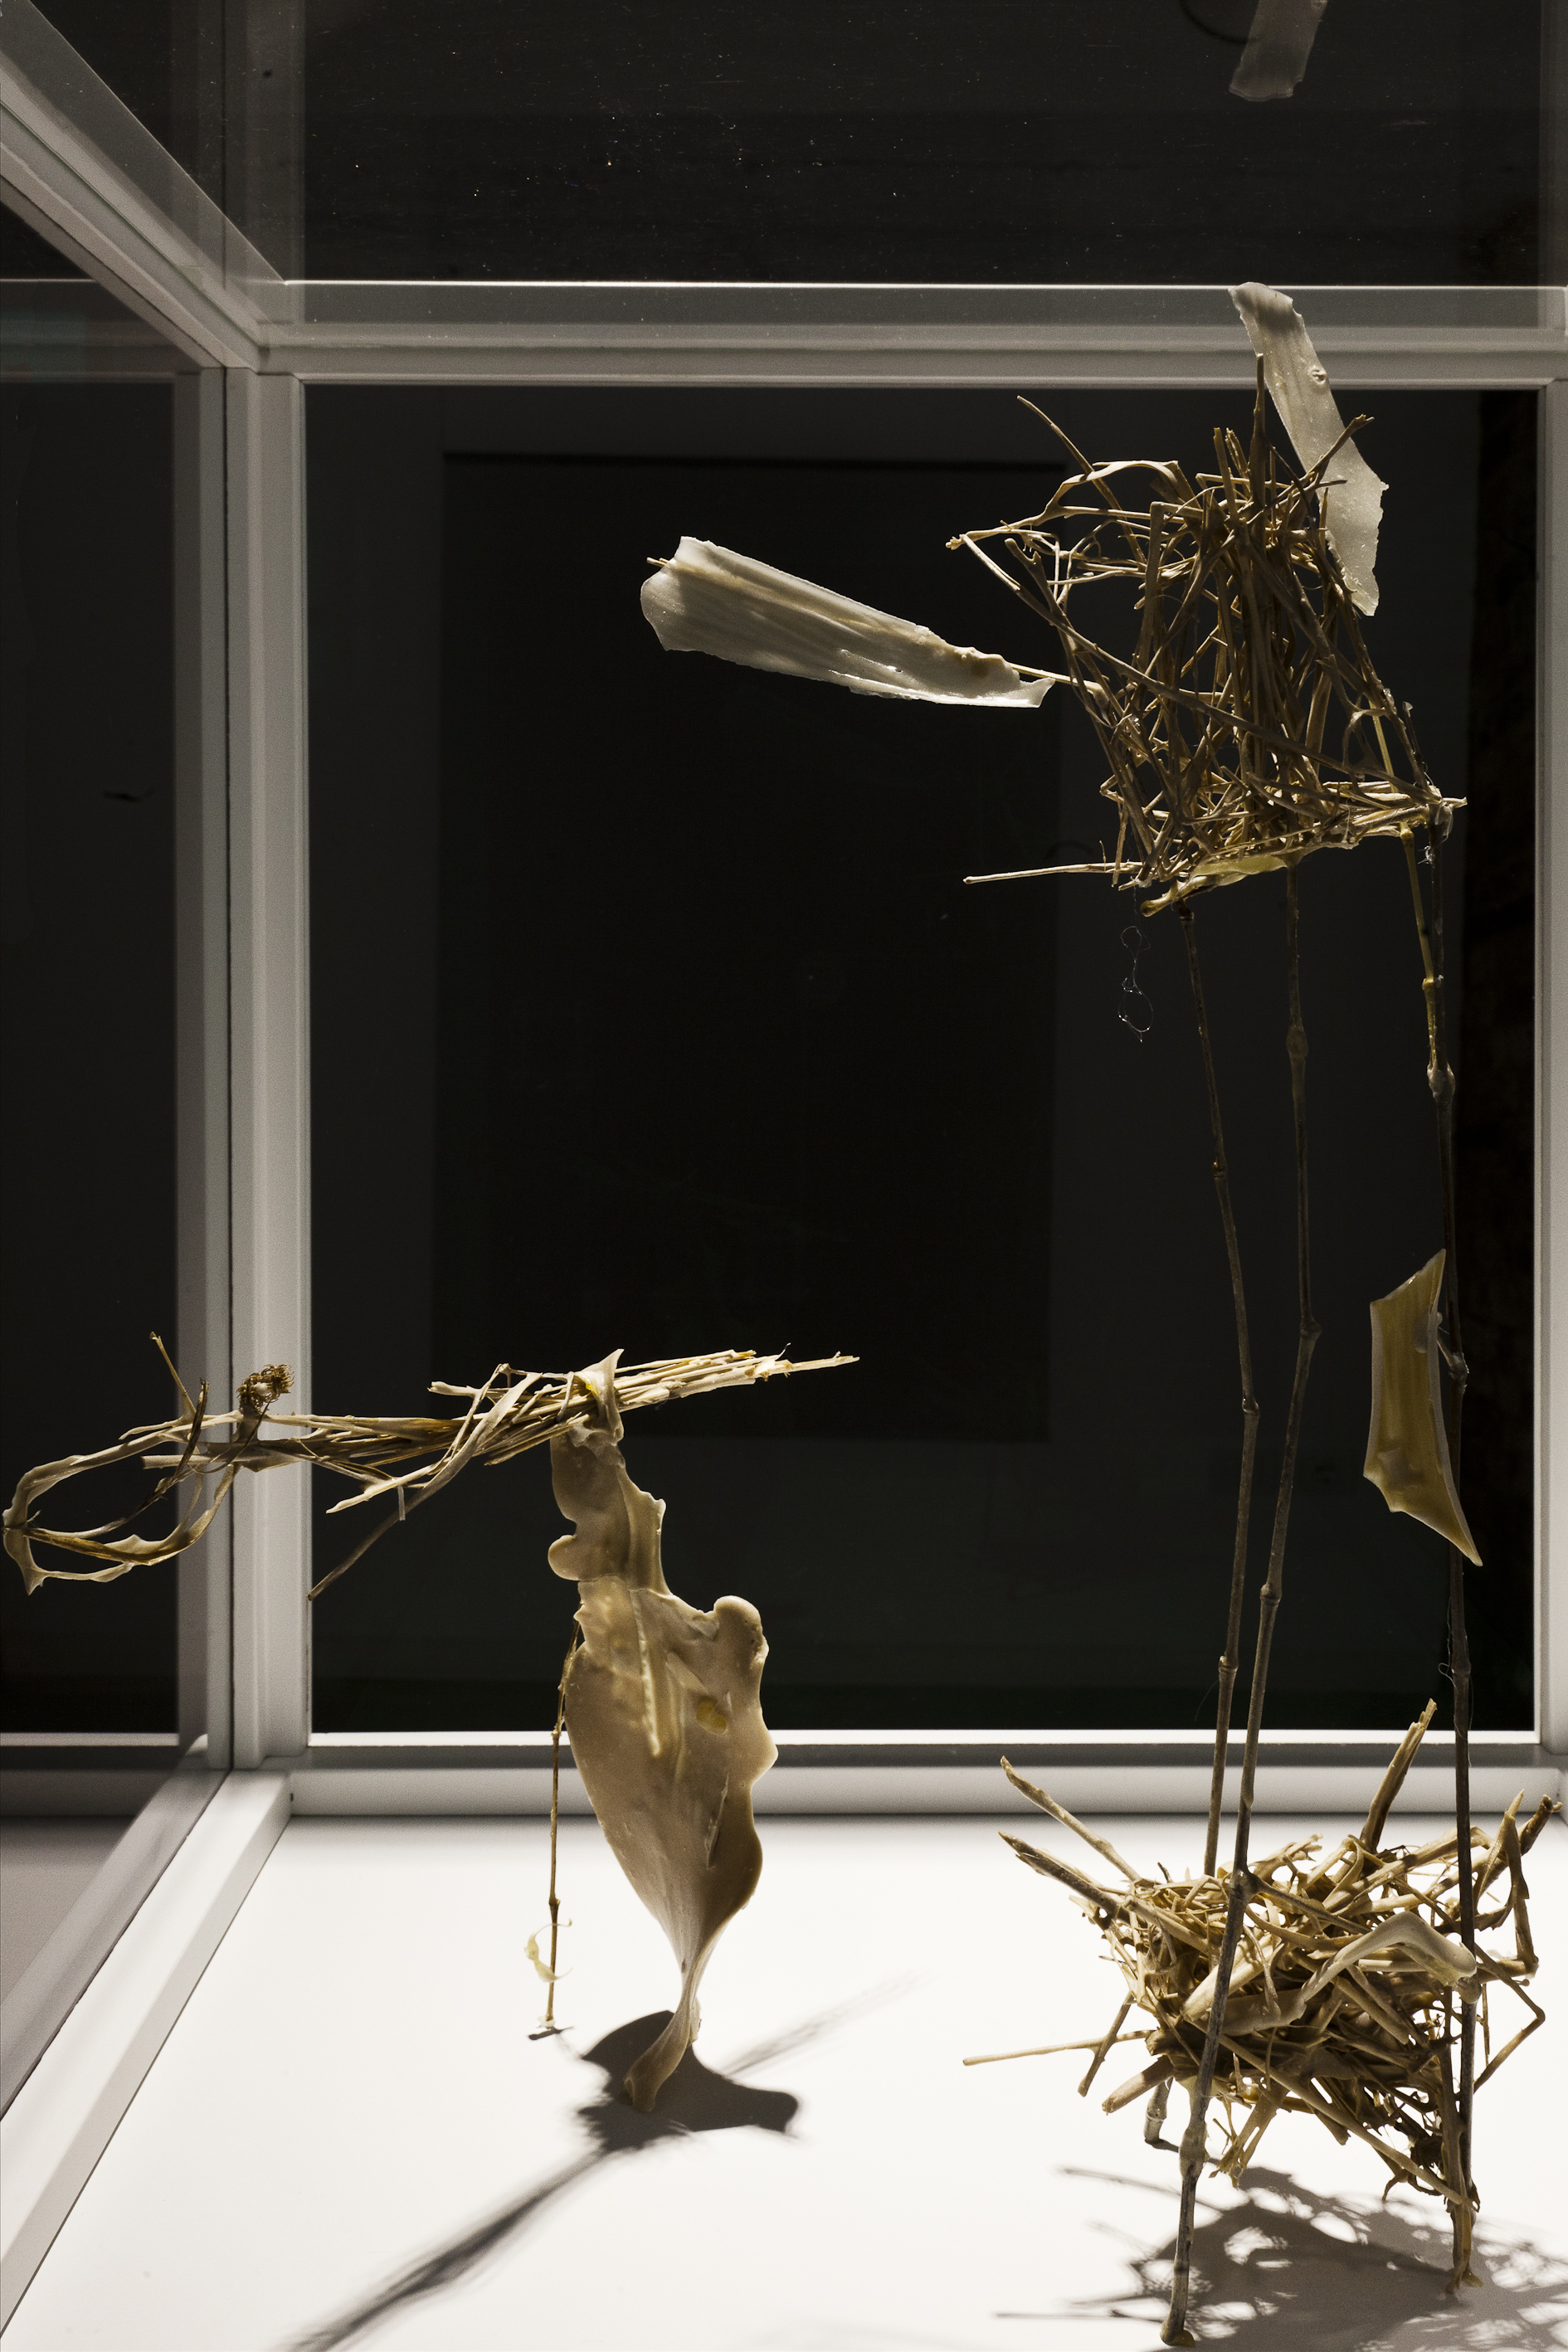 Installation view, Marignana Arte, Collettiva di Aldo Grazzi, Tobiolo e l'angelo II, 2012, Plaster, glue and organic elements